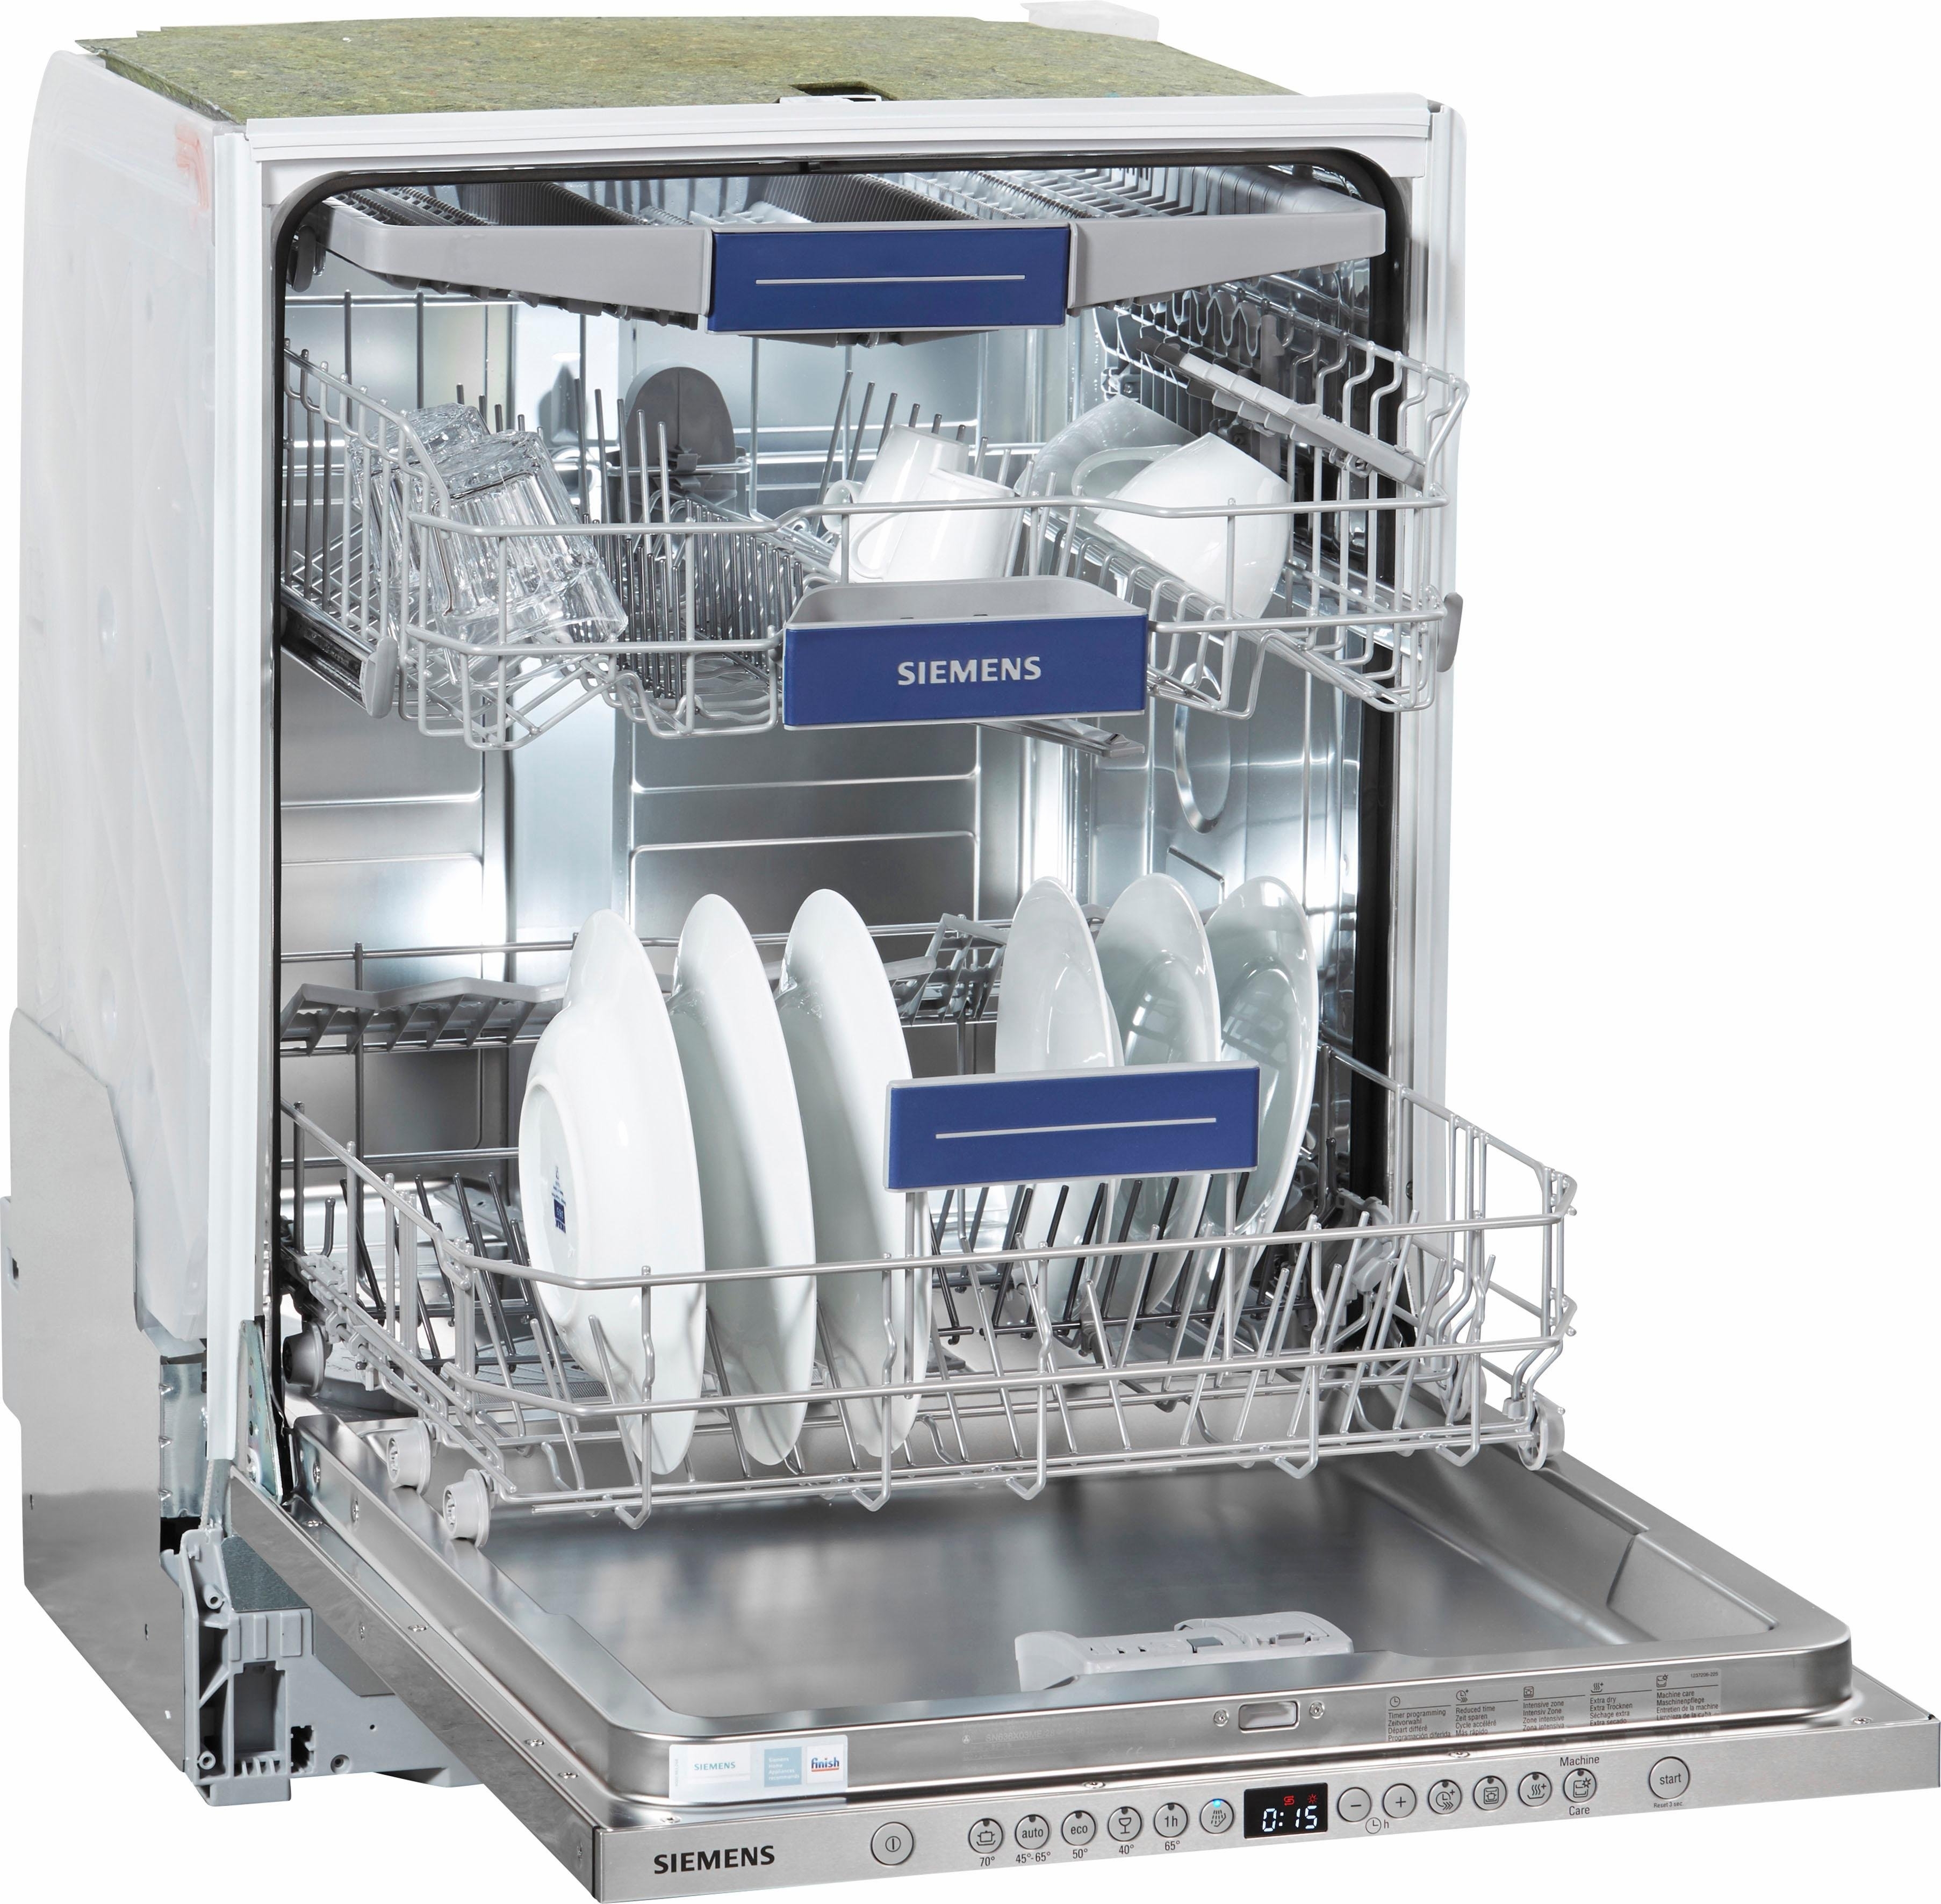 Купить в ростове посудомоечную. Посудомоечная машина Siemens SR 635x01 me. Siemens посудомоечная машина 45 см отдельностоящая. Посудомойка Сименс 45 см встраиваемая. Посудомоечная машина Siemens 45 встраиваемая.